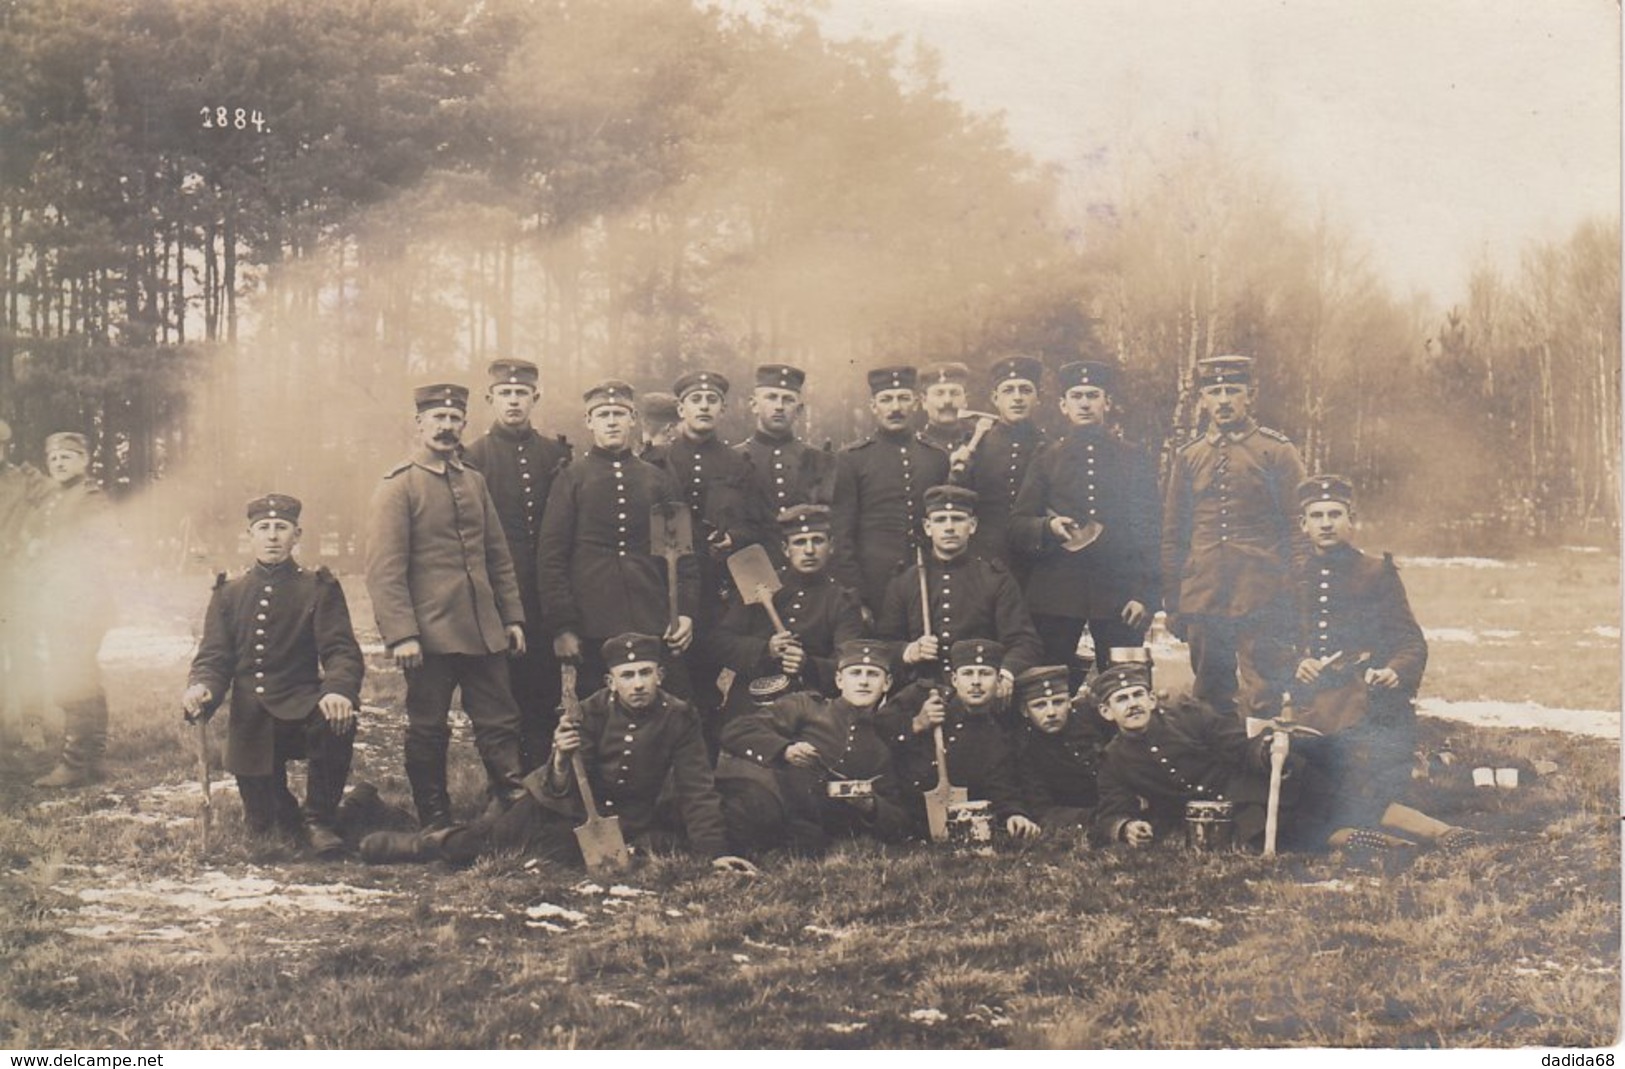 CARTE PHOTO ALLEMANDE - GUERRE 14-18 - KÖNIGSBRÜCK (ALLEMAGNE) - SOLDATS ALLEMANDS EN MANOEUVRE - Weltkrieg 1914-18